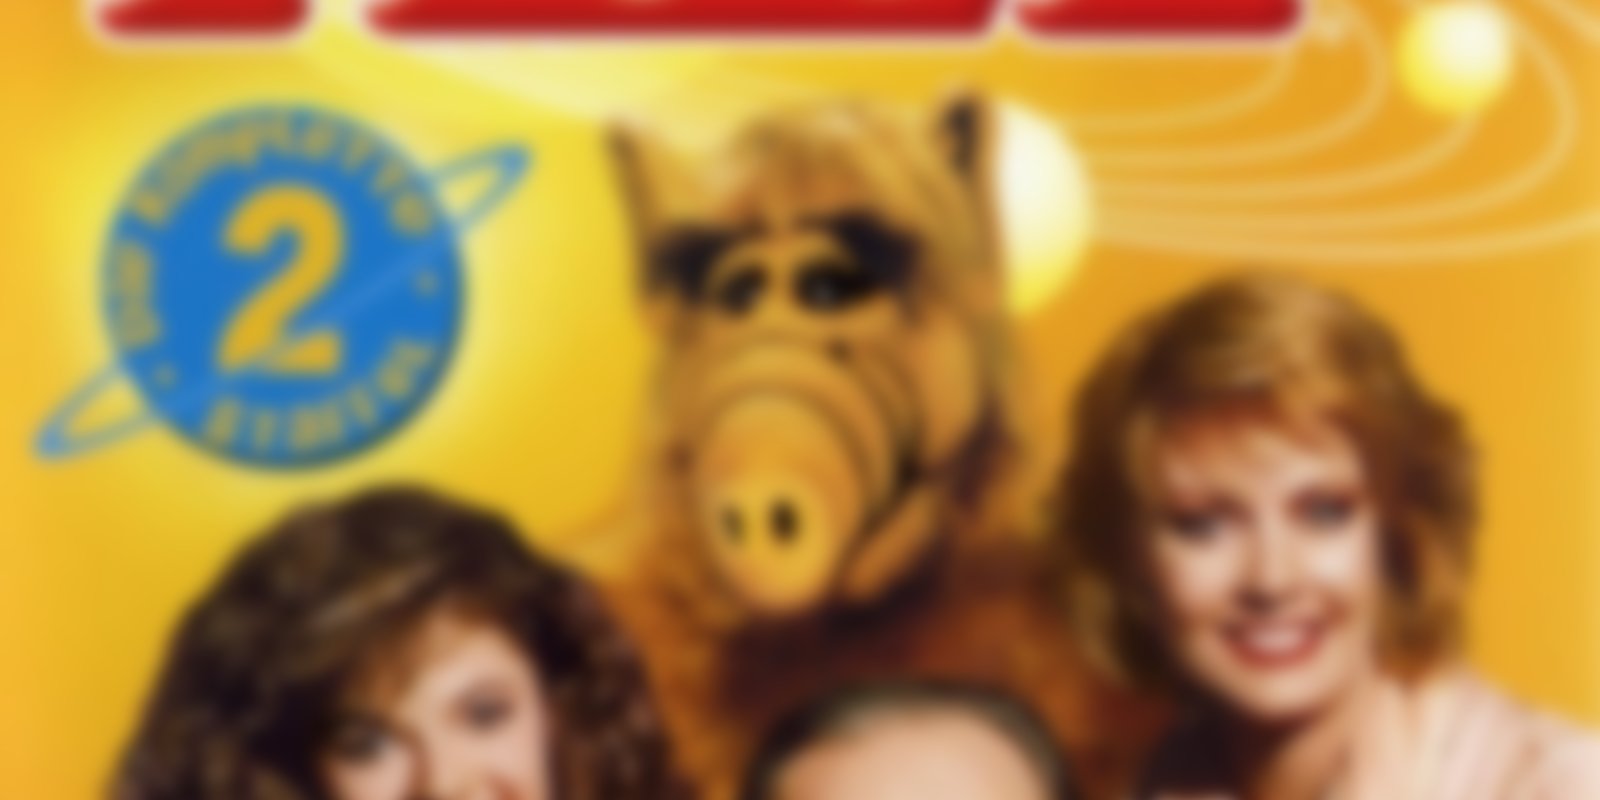 Alf - Staffel 2